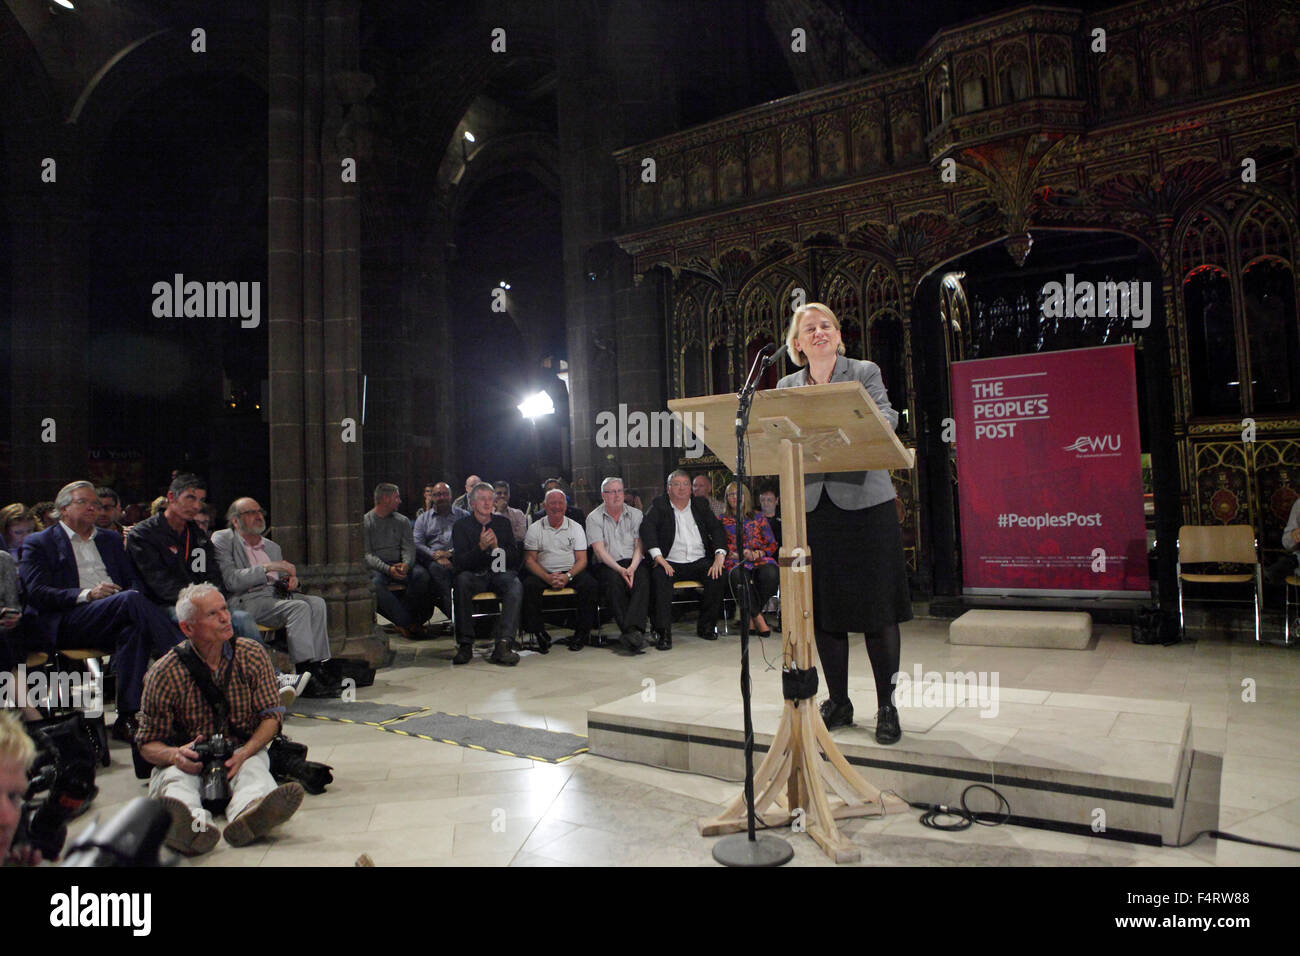 Natalie Bennett, líder del Partido Verde en el Reino Unido, político, política ambiental, pueblos Post, Catedral de Manchester Foto de stock